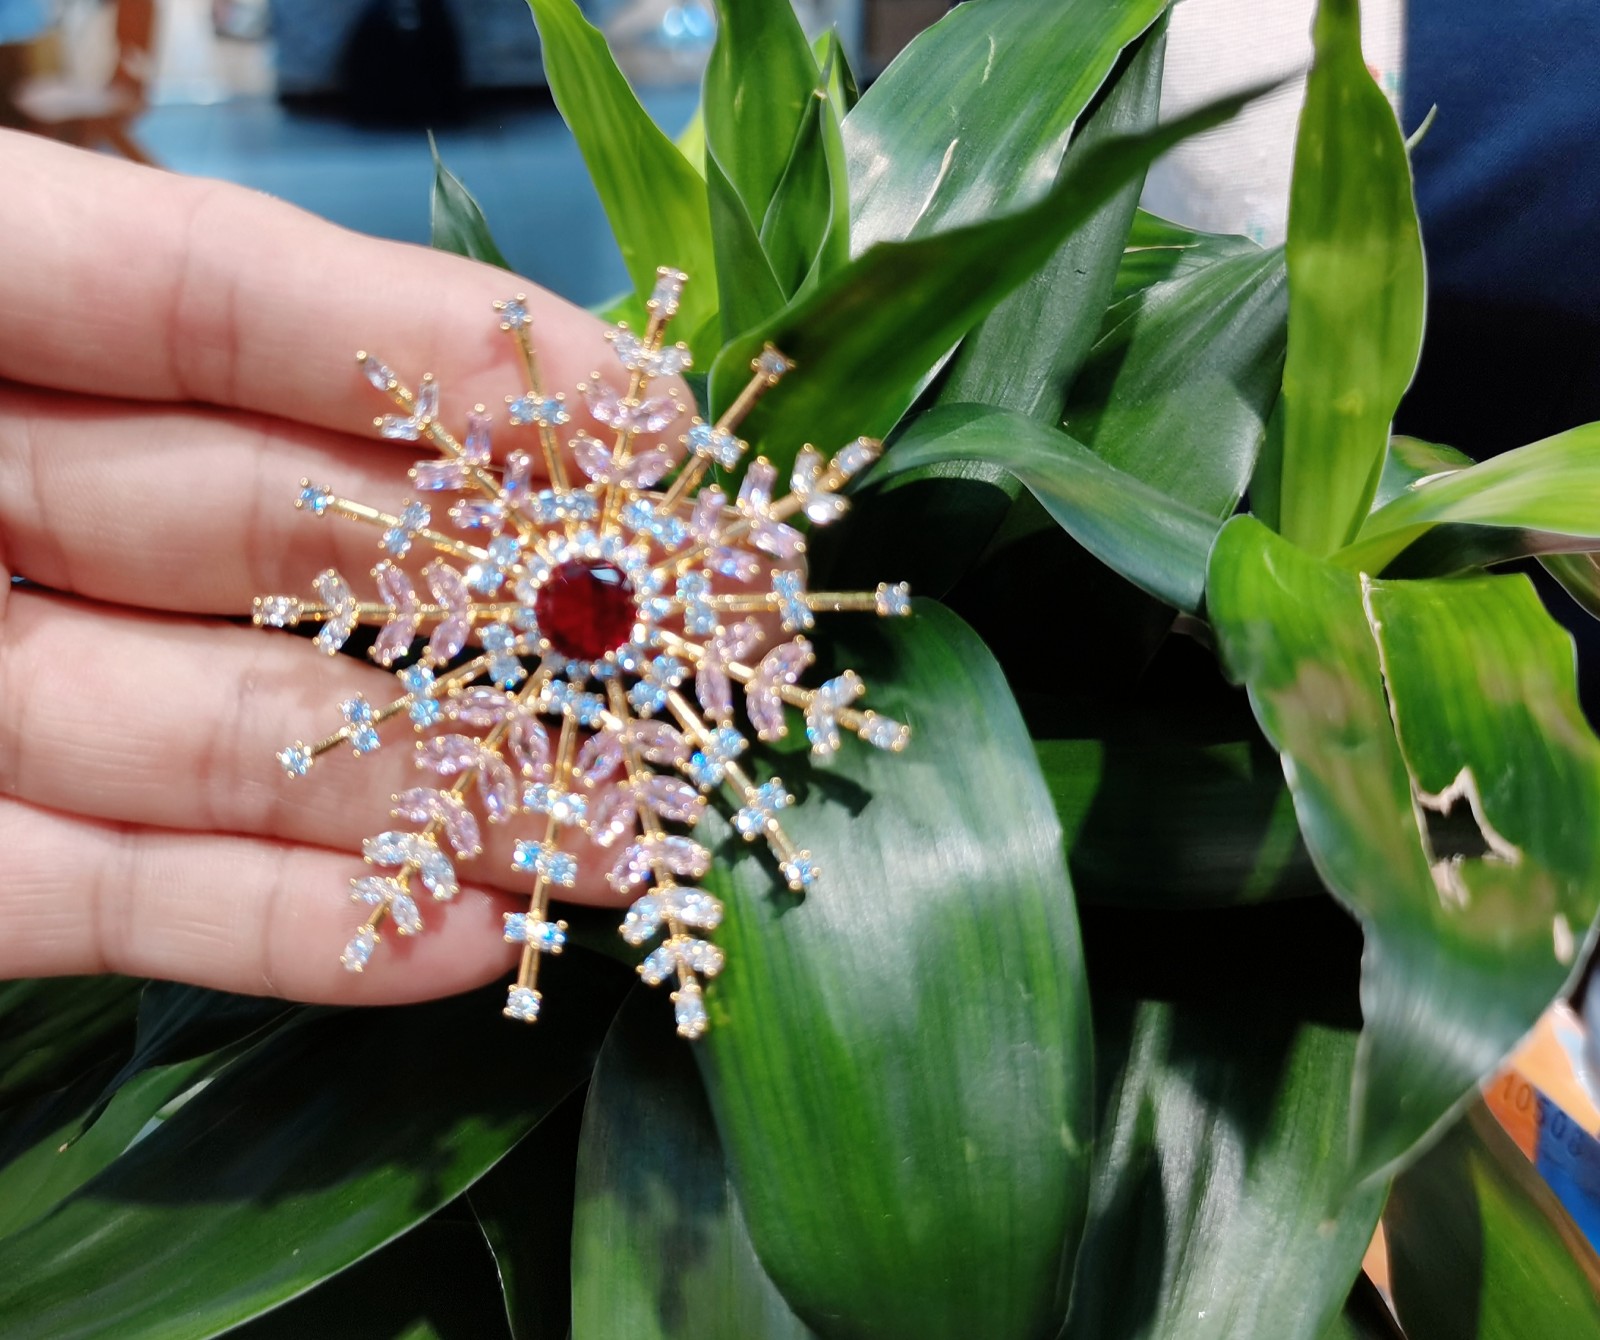 义乌市八季饰品商行销售胸针、戒指、项链、手链等产品